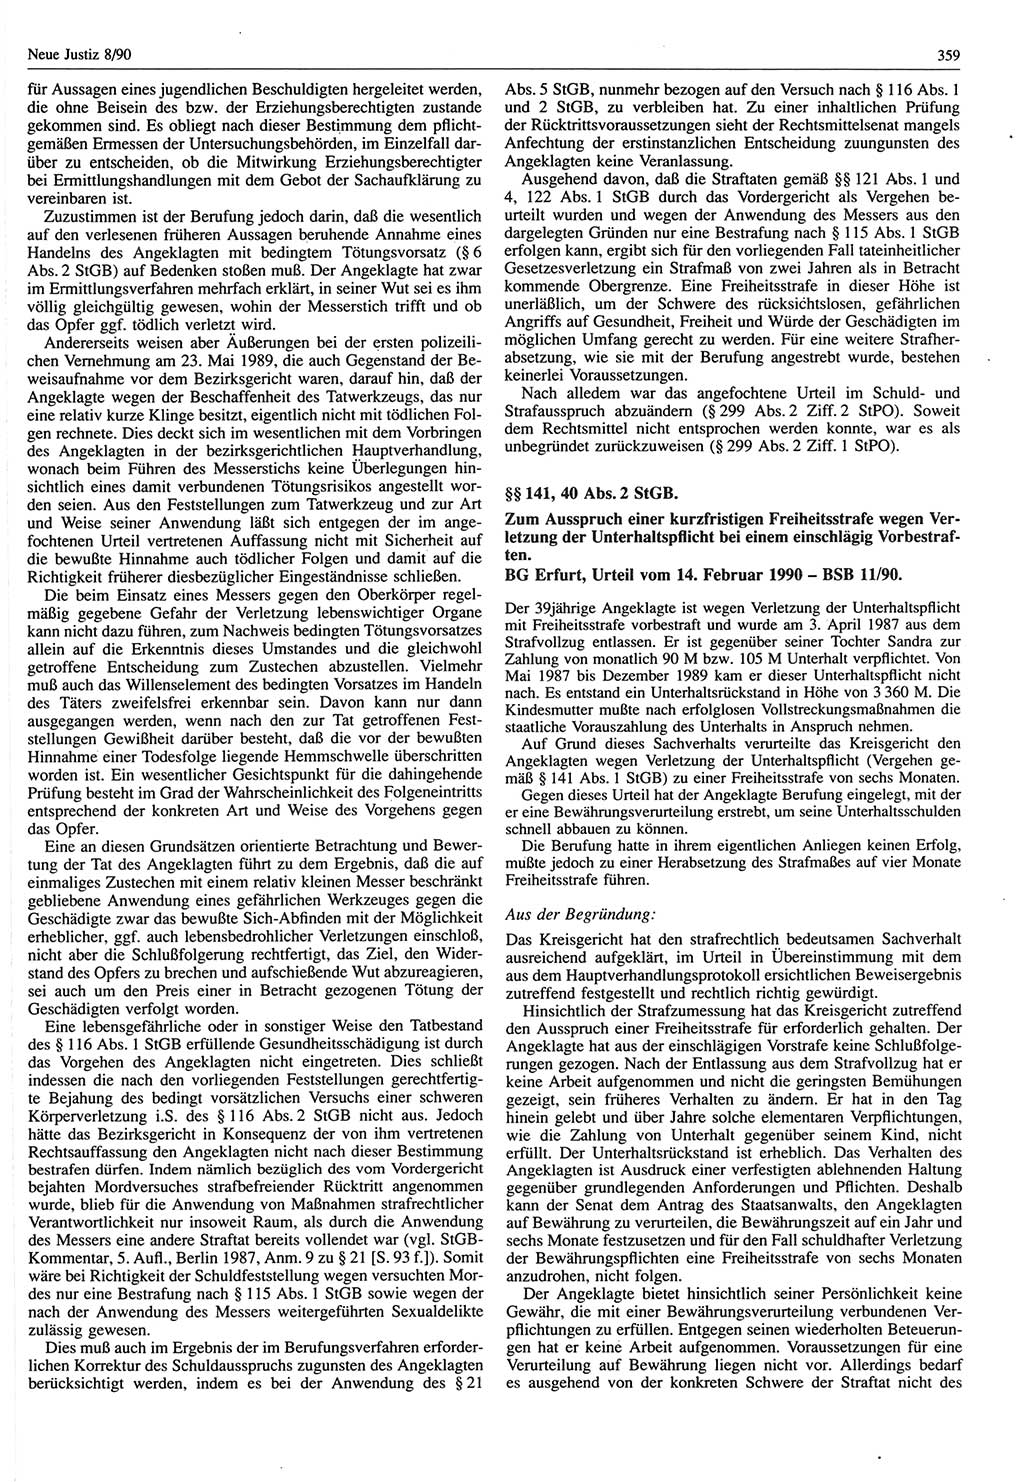 Neue Justiz (NJ), Zeitschrift für Rechtsetzung und Rechtsanwendung [Deutsche Demokratische Republik (DDR)], 44. Jahrgang 1990, Seite 359 (NJ DDR 1990, S. 359)